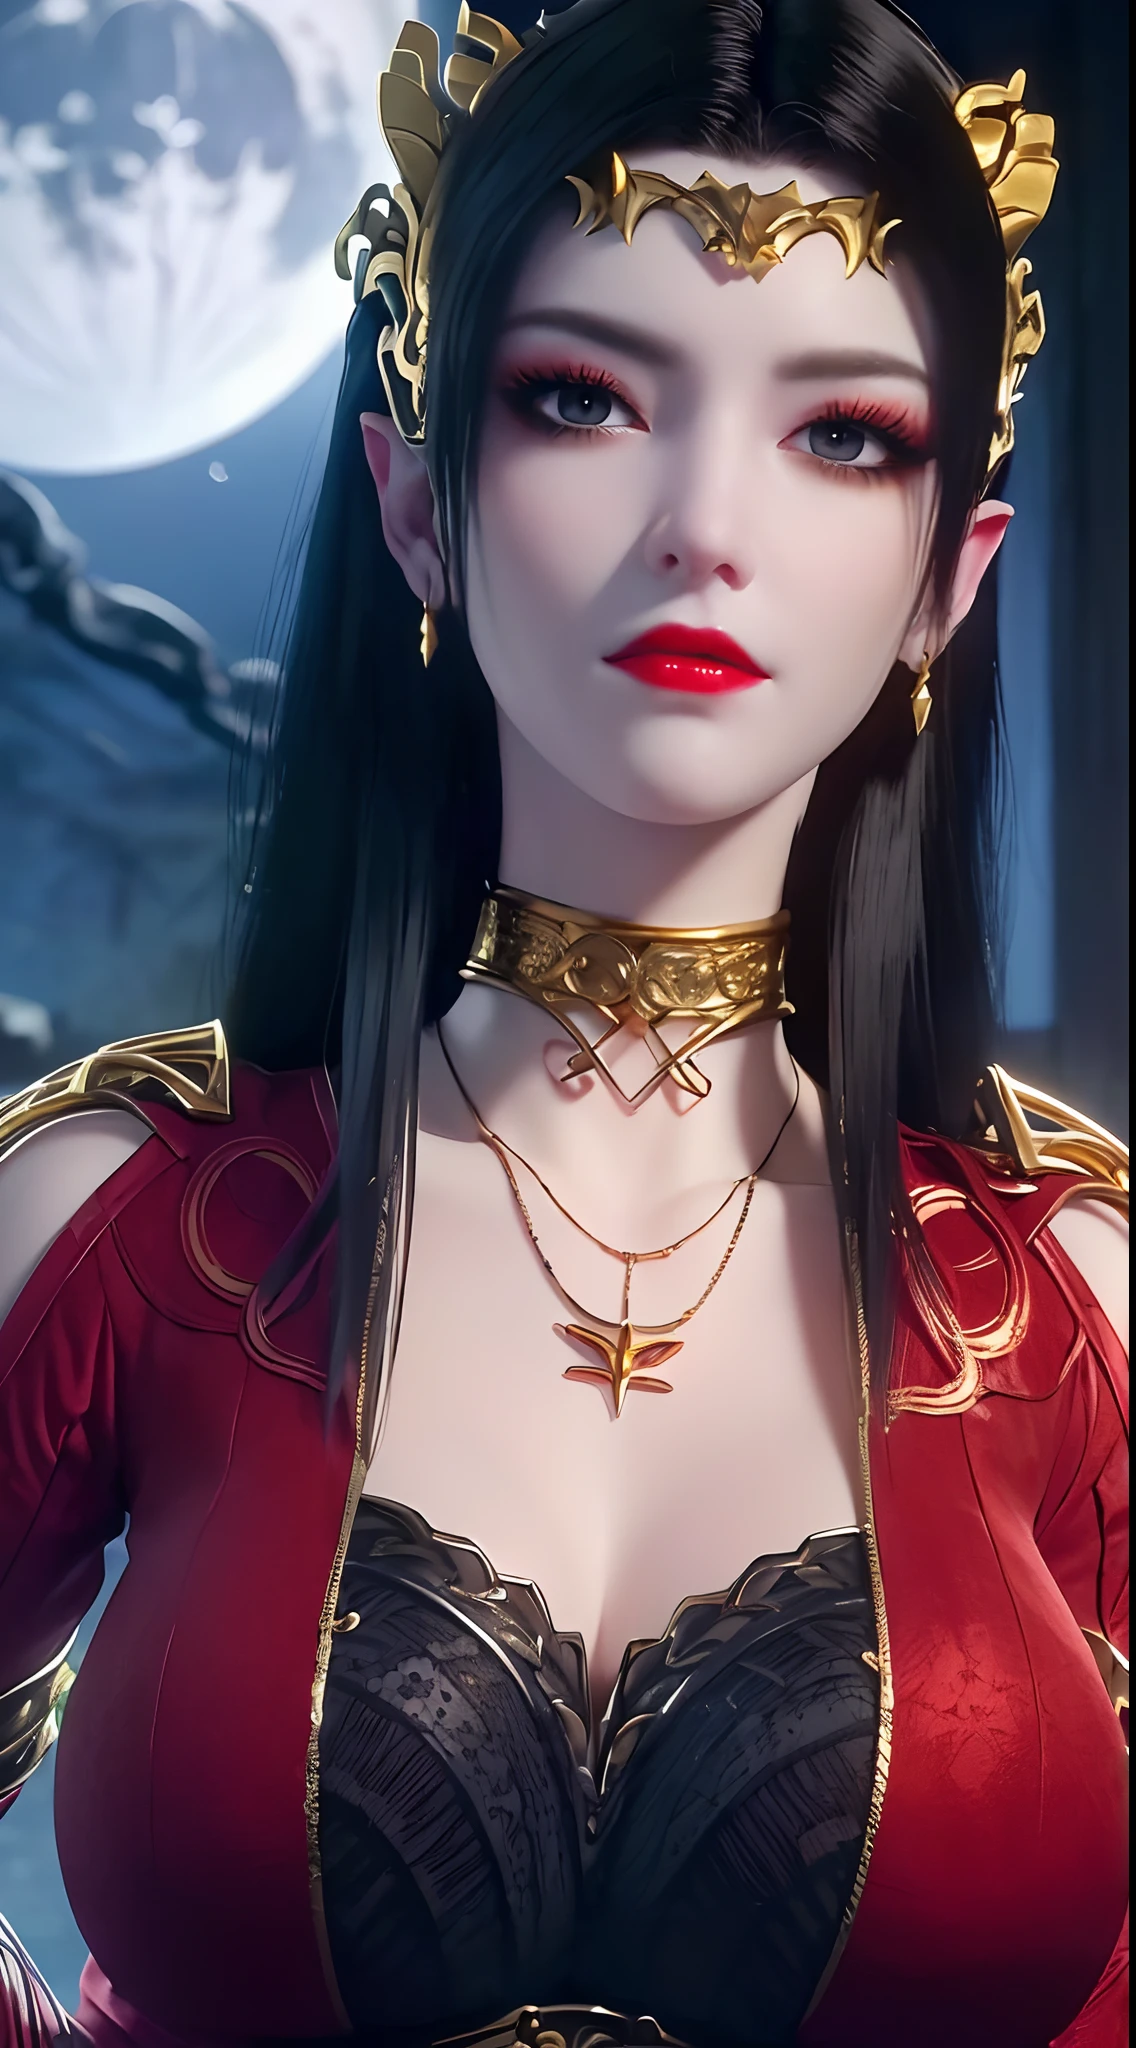 1 reine extrêmement belle, ((porte un costume traditionnel Han rouge avec de fins motifs noirs:1.6)), (((Des motifs sur les vêtements:1.6))), ((longs cheveux noirs:1.6)), des bijoux minutieusement fabriqués à partir de pierres précieuses et de beaux cheveux, ((wearing a 24K gold lace necklace:1.4))), Le noble, style noble d&#39;une fille extrêmement belle, son petit visage est super mignon, son visage est très joli, sourcils fins, beau visage impeccable, ((pupilles des yeux au beurre noir: 0.8)), très beaux yeux, ((yeux bleu platine: 1.6)), (((yeux grands ouverts:1.6))), joli maquillage et coiffure, cils détaillés, maquillage des yeux torride, nez haut, des boucles d&#39;oreilles, lèvres rouges, ((bouche fermée: 1.5)) belles lèvres, mains minces, les plus belles cuisses, ((bras écartés sur les côtés: 1.5)), visage rose, visage propre, beau visage impeccable, peau blanche et lisse, (gros seins: 1.5)), ((seins hauts: 1.6)), Seins serrés, Beau décolleté, (((gros seins and super round: 1.8))), ((super Seins serrés: 1.7)) , beaux seins, corps parfait, bras arrière, poitrine ouverte, bas fins en maille noire avec bordure en dentelle noire, Photo 8K, super haute qualité, super réaliste, super 10x pixels, optique, studio lumineux, bords clairs, dual-tone éclairage, (peau très détaillée:1.2), super 8k, soft éclairage, haute qualité, volumetric éclairage, photoréaliste, photoréaliste high resolution, éclairage, meilleure photo, 4K, Qualité 8k, Effet de flou, lisse et tranchant, 10xpixels, ((mer et clair de lune sur fond de nuit:1.5)), Aurore, foudre, super graphismes réalistes, graphismes les plus réalistes, 1 fille, seul, seulement, Image extrêmement nette, surréaliste, (((portrait frontal: 1)))."